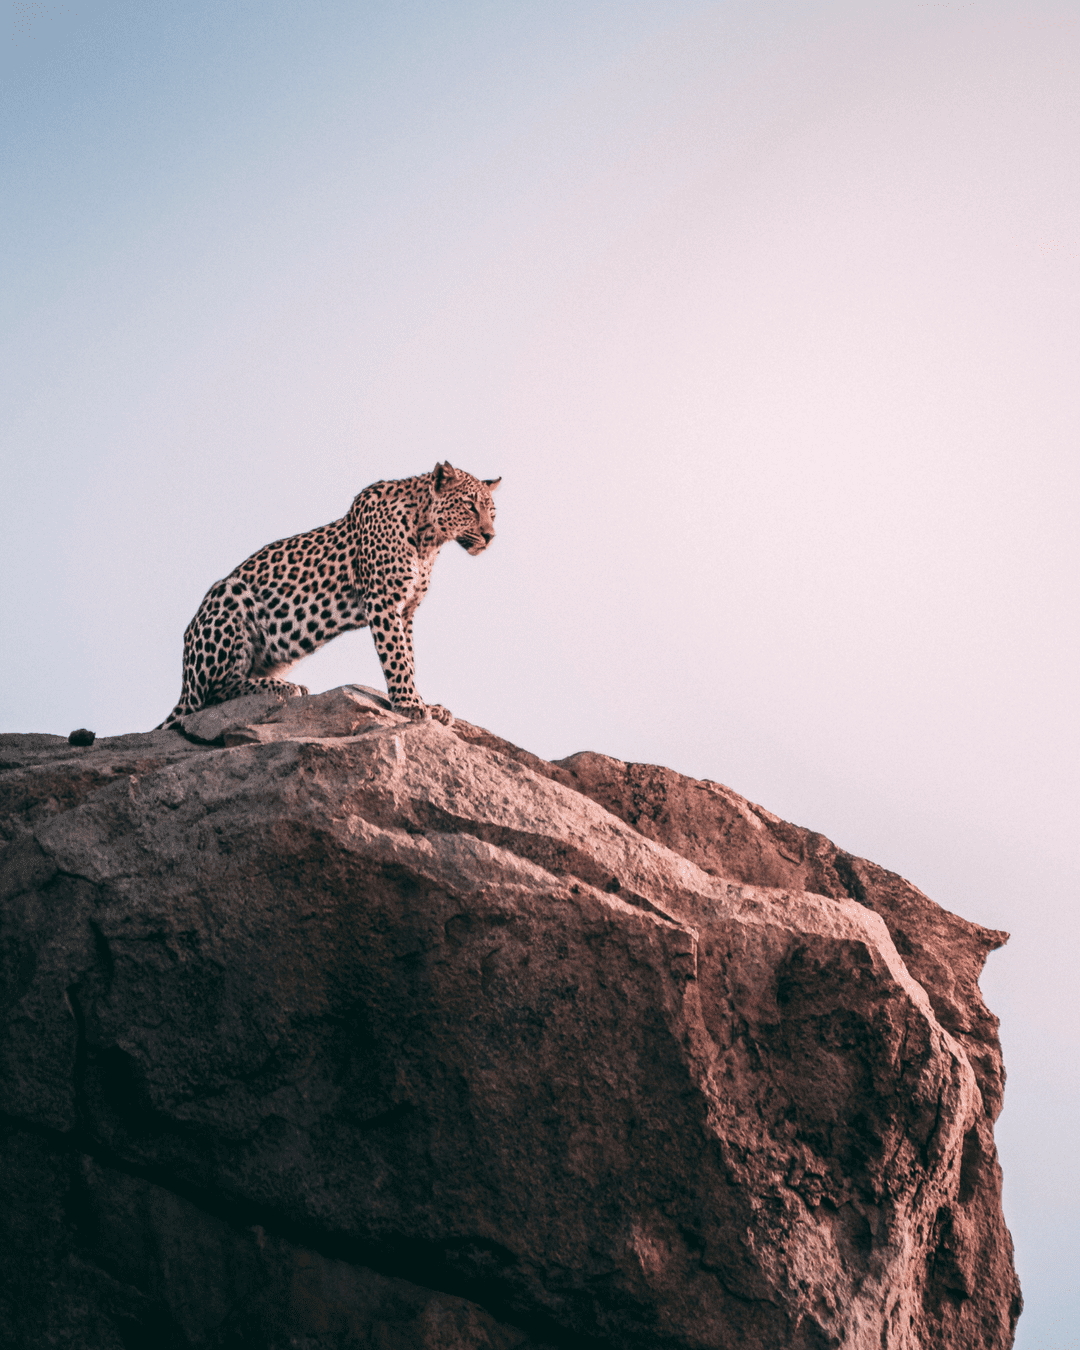 Leopard on a boulder